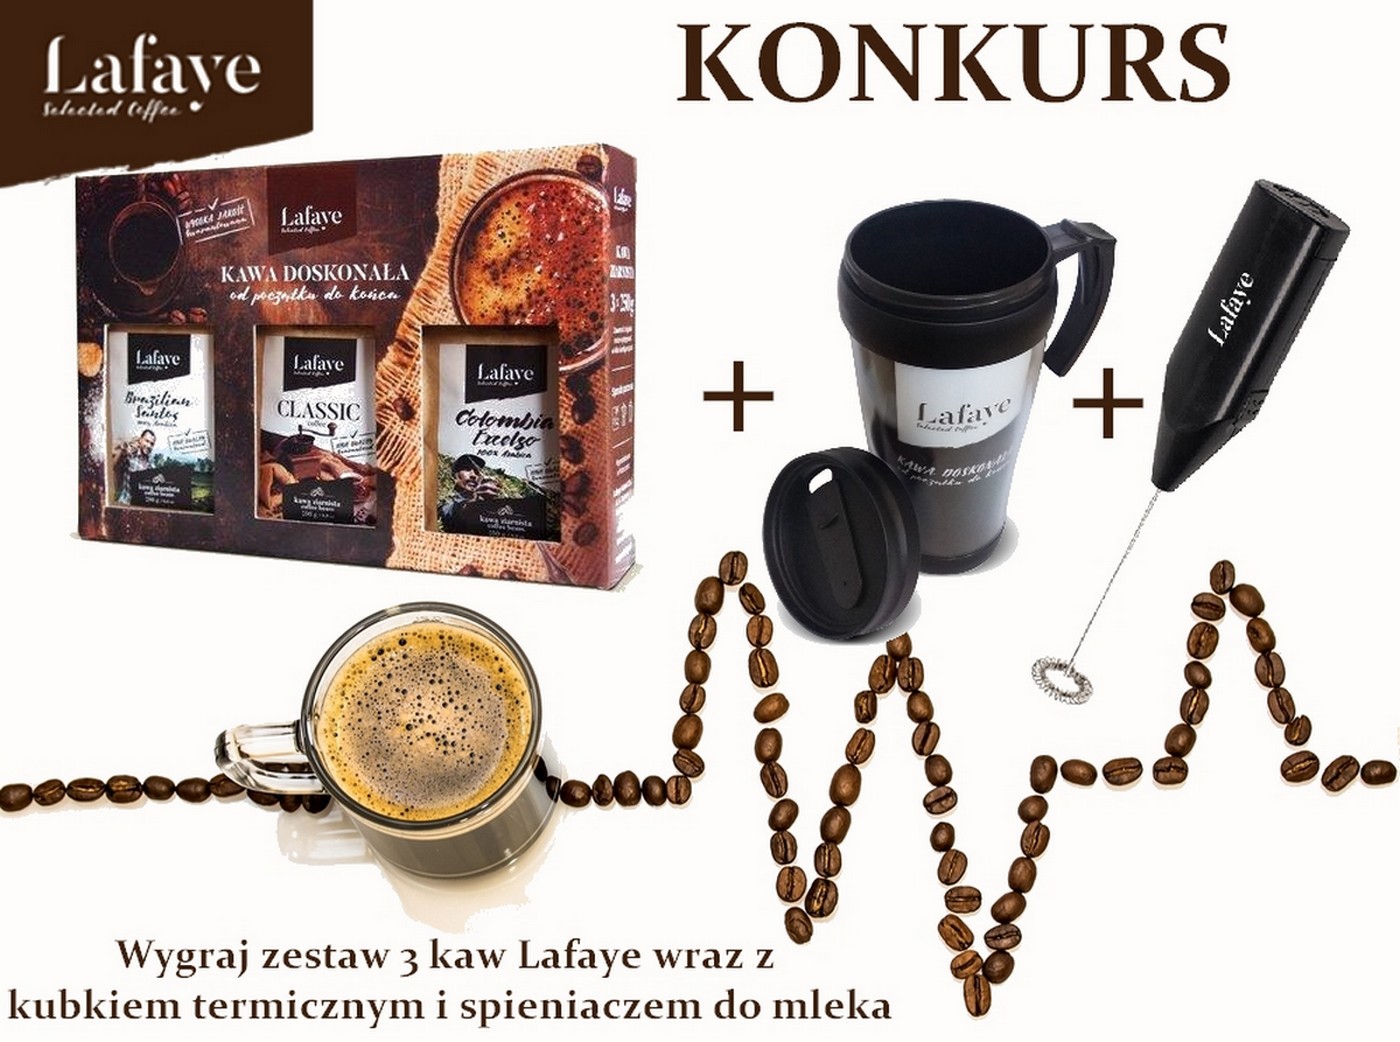 Konkurs z Lafaye Wygraj zestaw 3 kaw wraz z kubkiem termicznym i spieniaczem do mleka